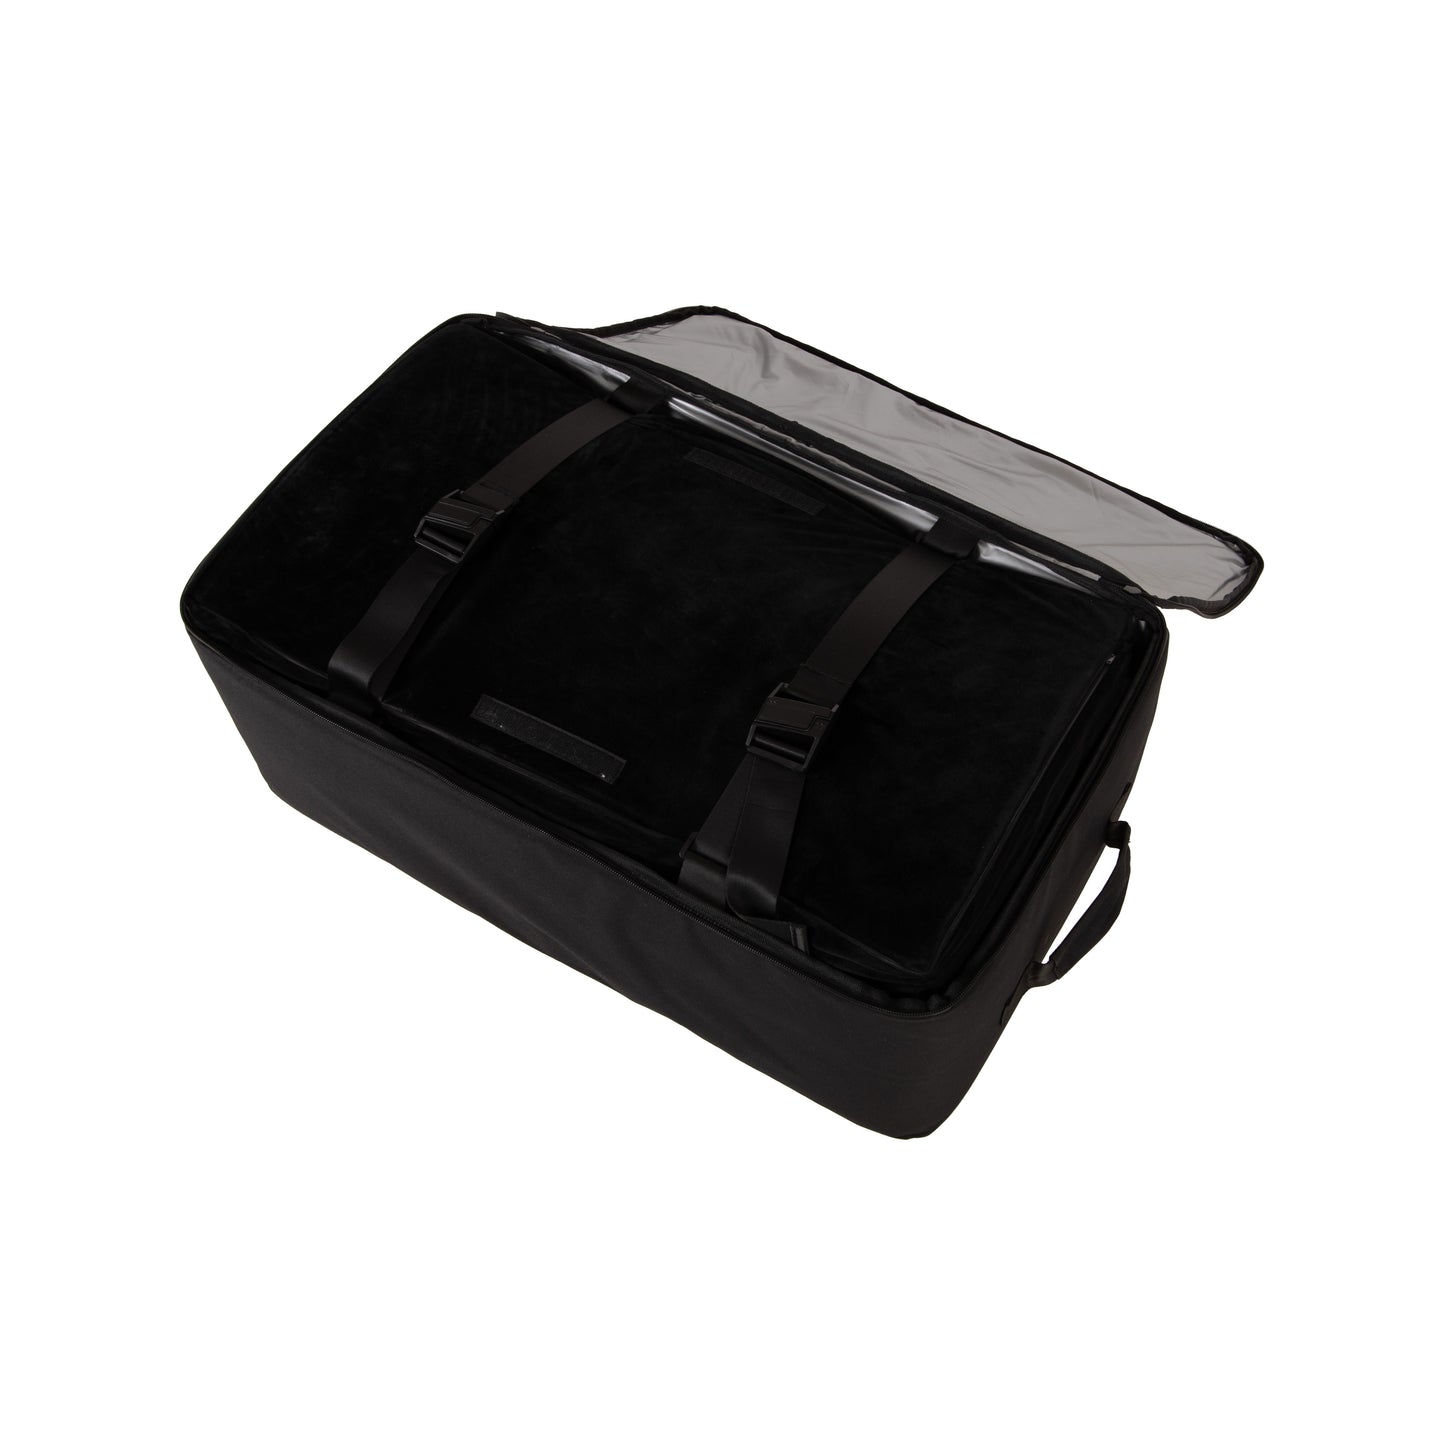 EV-MATS Basic CAMP SET para Tesla Model 3 incluye el colchón Tesla, la bolsa impermeable que cabe en el maletero trasero del Tesla Model 3, una sábana, un edredón, 2 almohadas y una funda de almohada